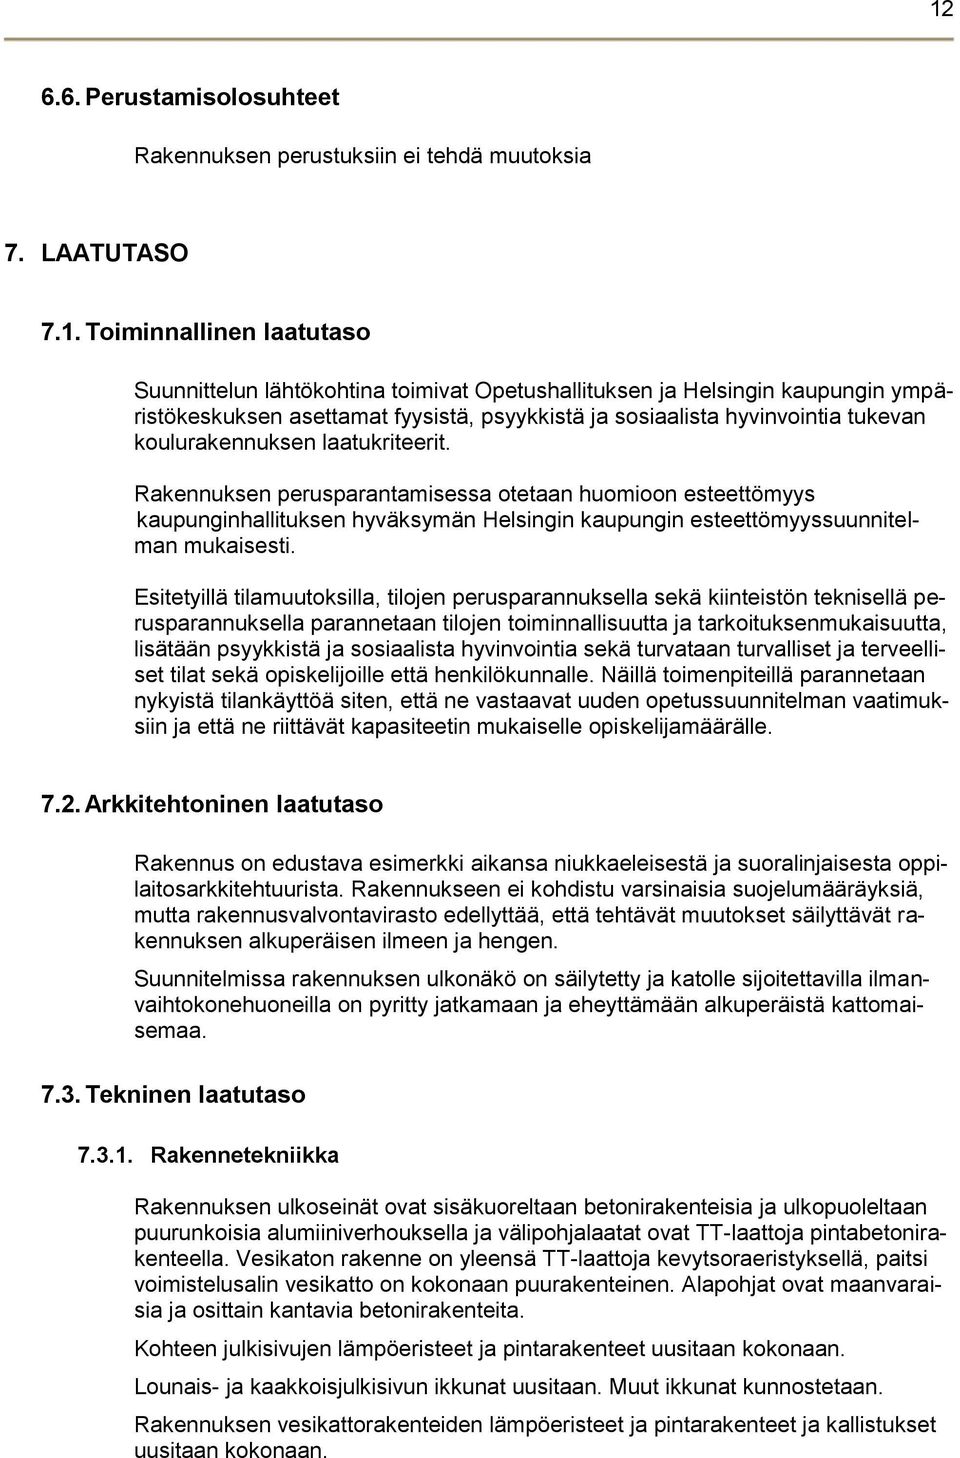 Rakennuksen perusparantamisessa otetaan huomioon esteettömyys kaupunginhallituksen hyväksymän Helsingin kaupungin esteettömyyssuunnitelman mukaisesti.